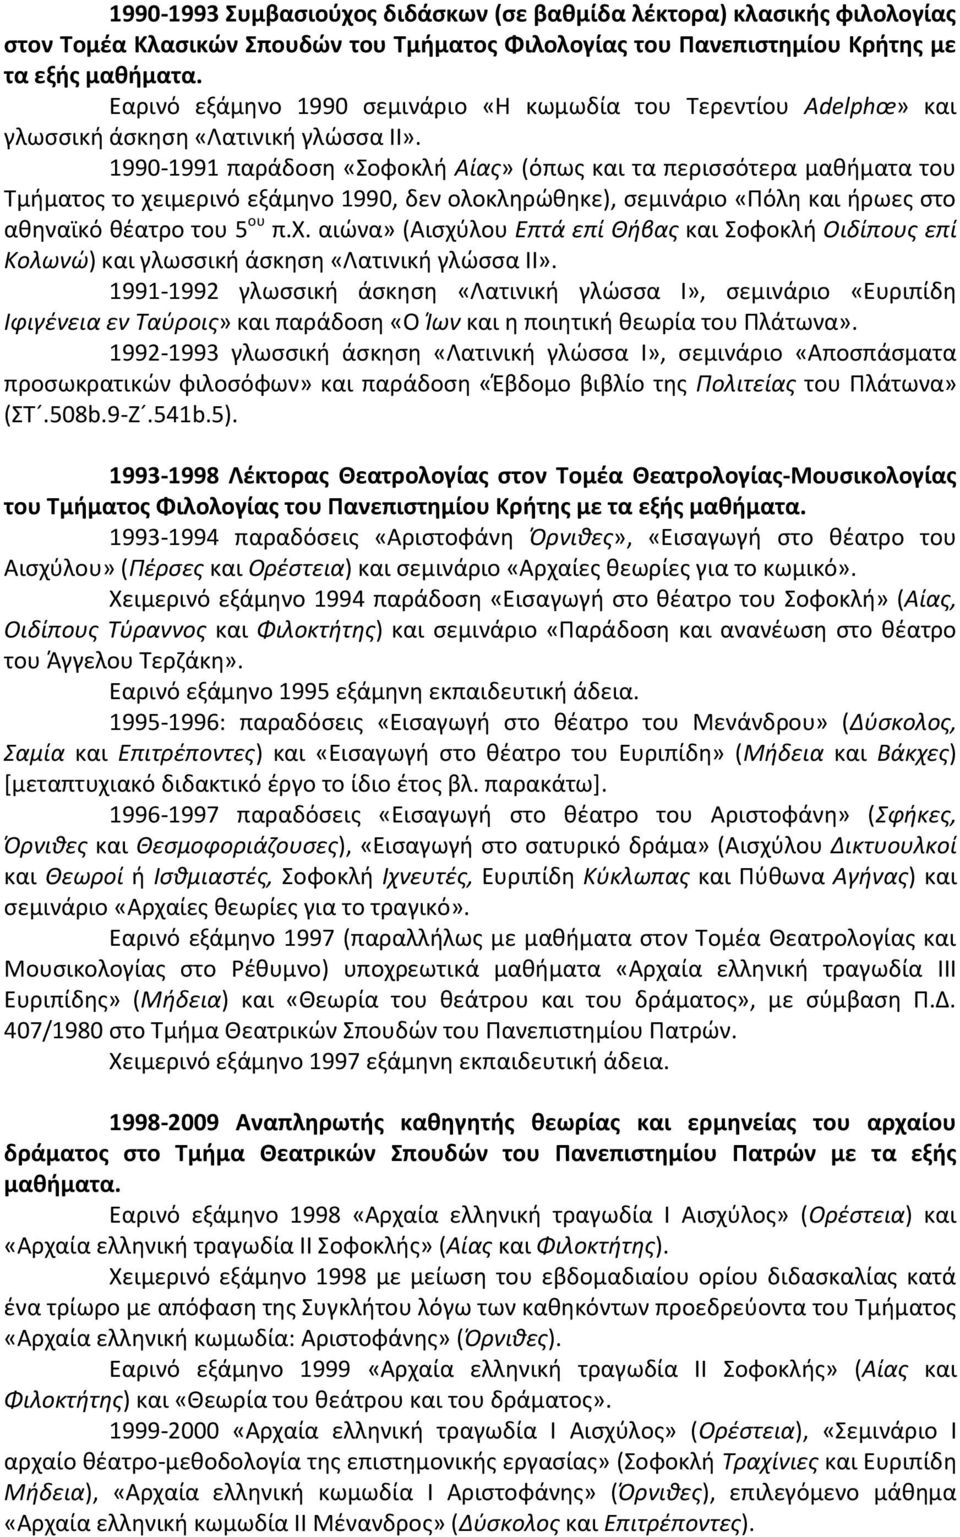 1990-1991 παράδοση «Σοφοκλή Αίας» (όπως και τα περισσότερα μαθήματα του Τμήματος το χειμερινό εξάμηνο 1990, δεν ολοκληρώθηκε), σεμινάριο «Πόλη και ήρωες στο αθηναϊκό θέατρο του 5 ου π.χ. αιώνα» (Αισχύλου Επτά επί Θήβας και Σοφοκλή Οιδίπους επί Κολωνώ) και γλωσσική άσκηση «Λατινική γλώσσα II».